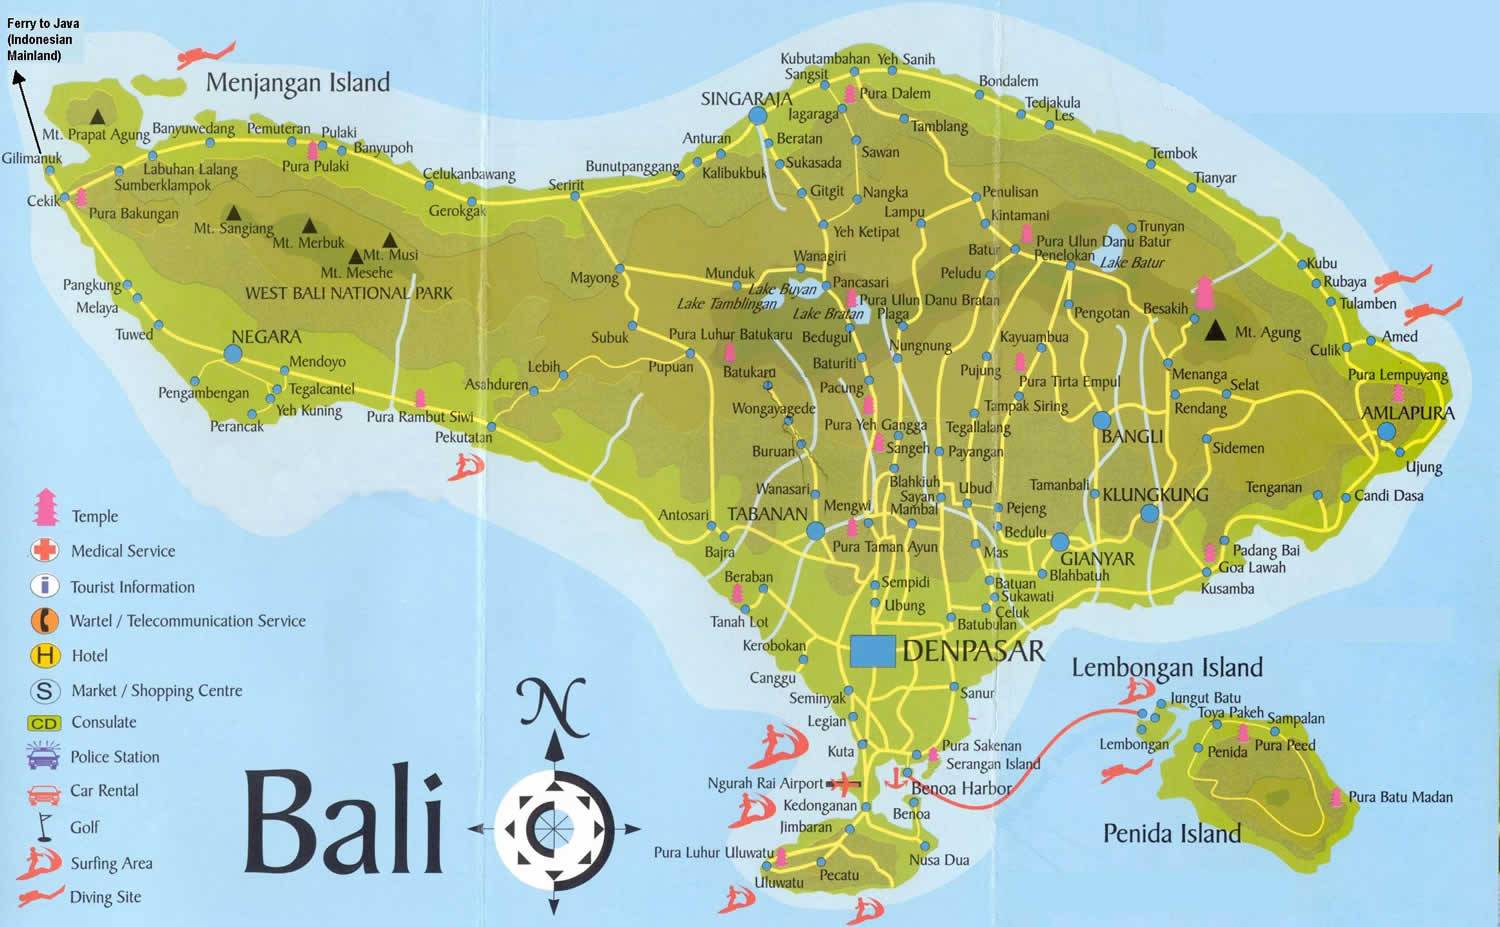 Mapa de Bali de alta calidad para descargar